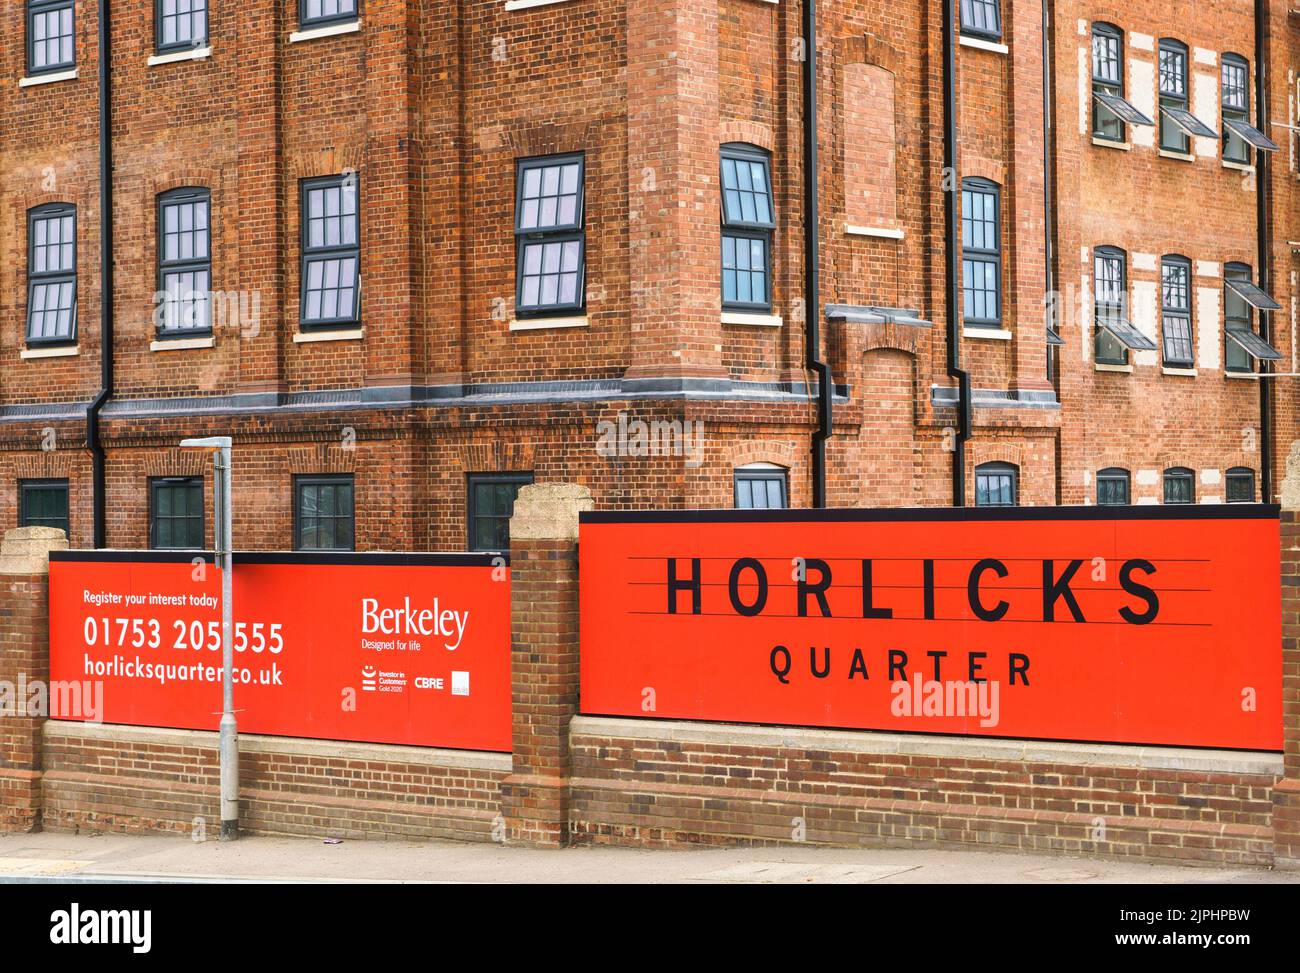 Nuovo sviluppo a Slough, Berkshire, sul sito della fabbrica Horlicks. Rinominato quartiere Horlicks e con l'obiettivo di creare nuove comunità a Slough. Foto Stock